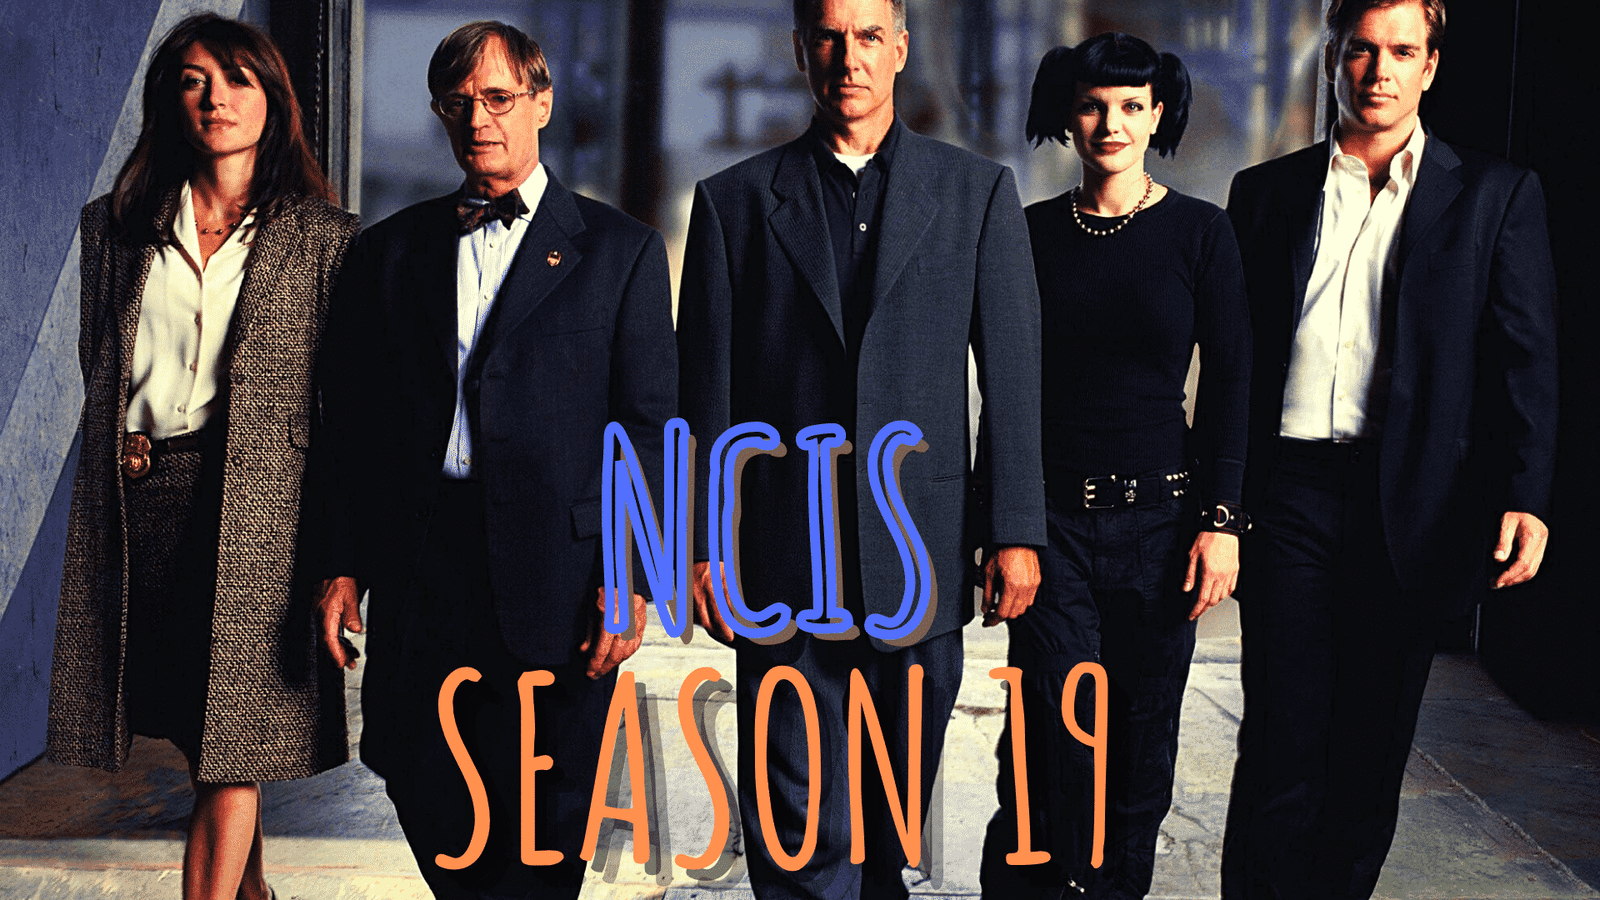 NCIS poster